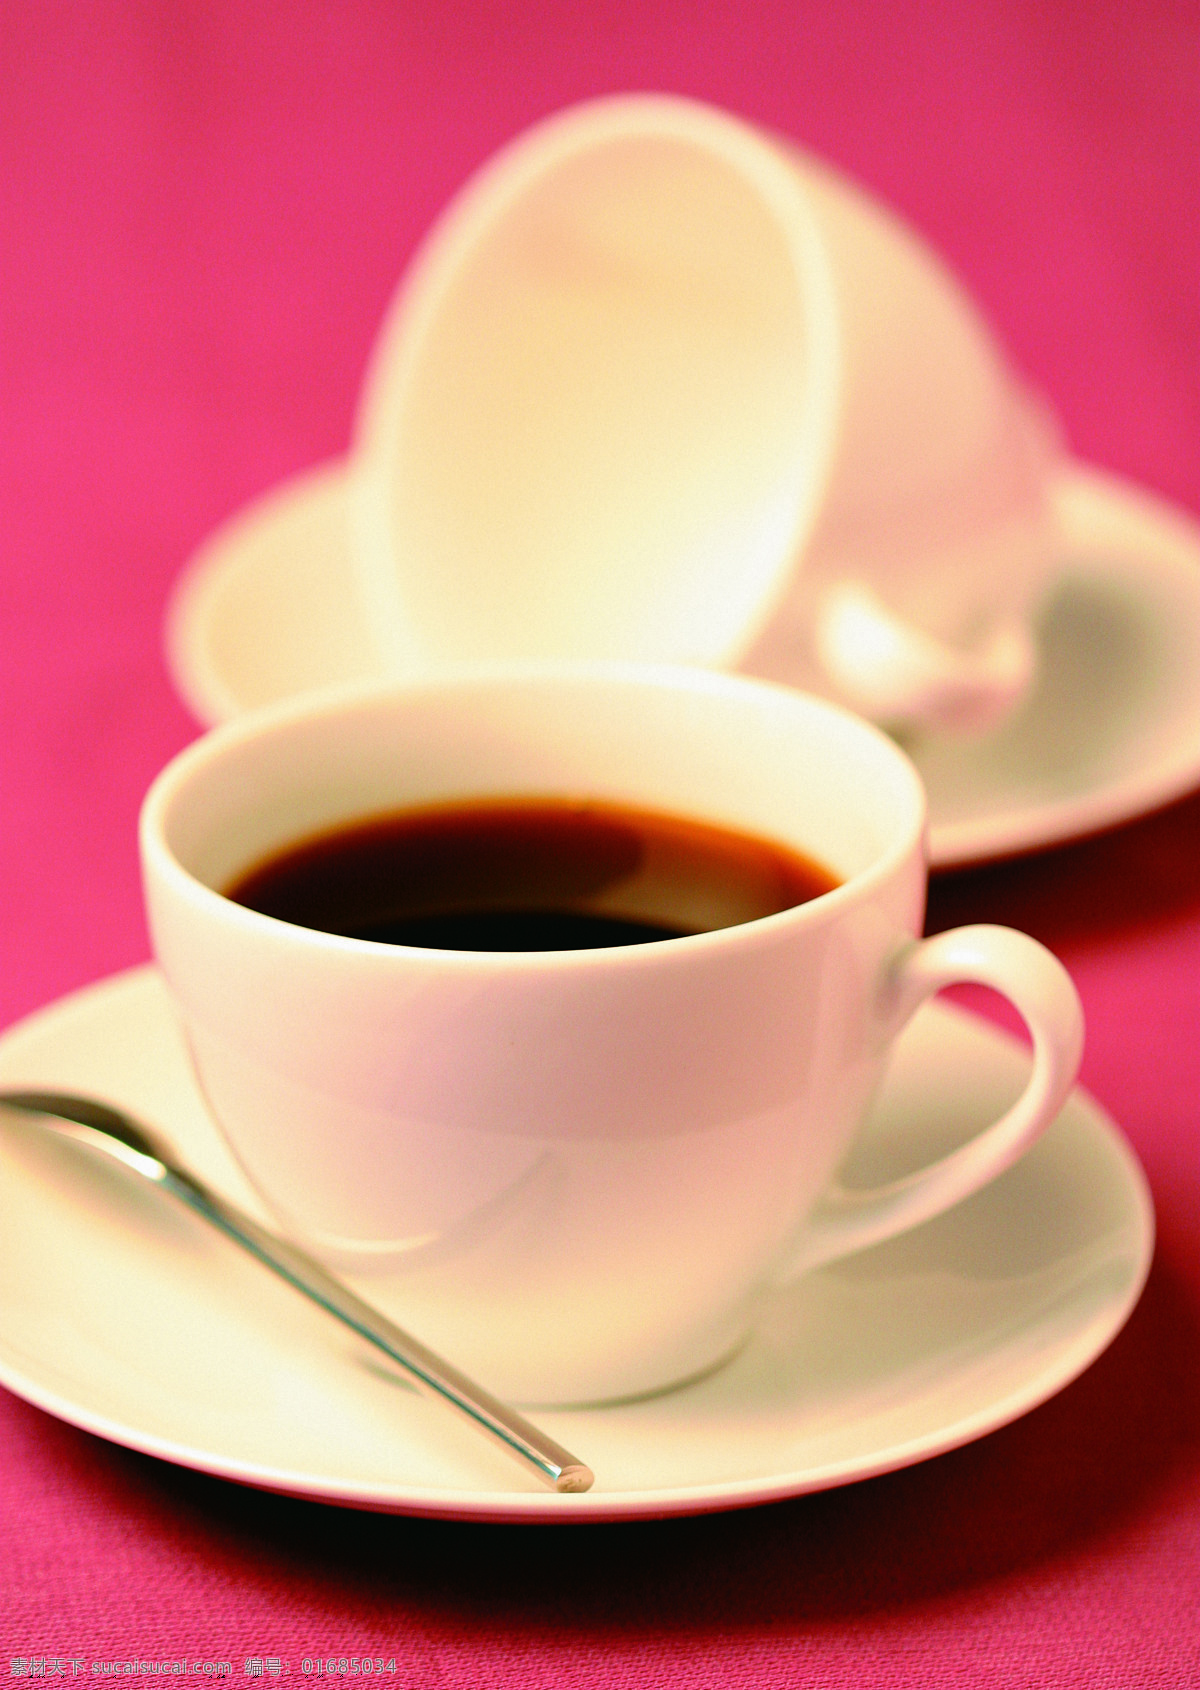 咖啡 咖啡杯 精致 白色咖啡杯 红色桌布 咖啡厅 咖啡勺 特写 香浓 黑咖啡 休闲时光 品味 生活 高清图片 咖啡图片 餐饮美食